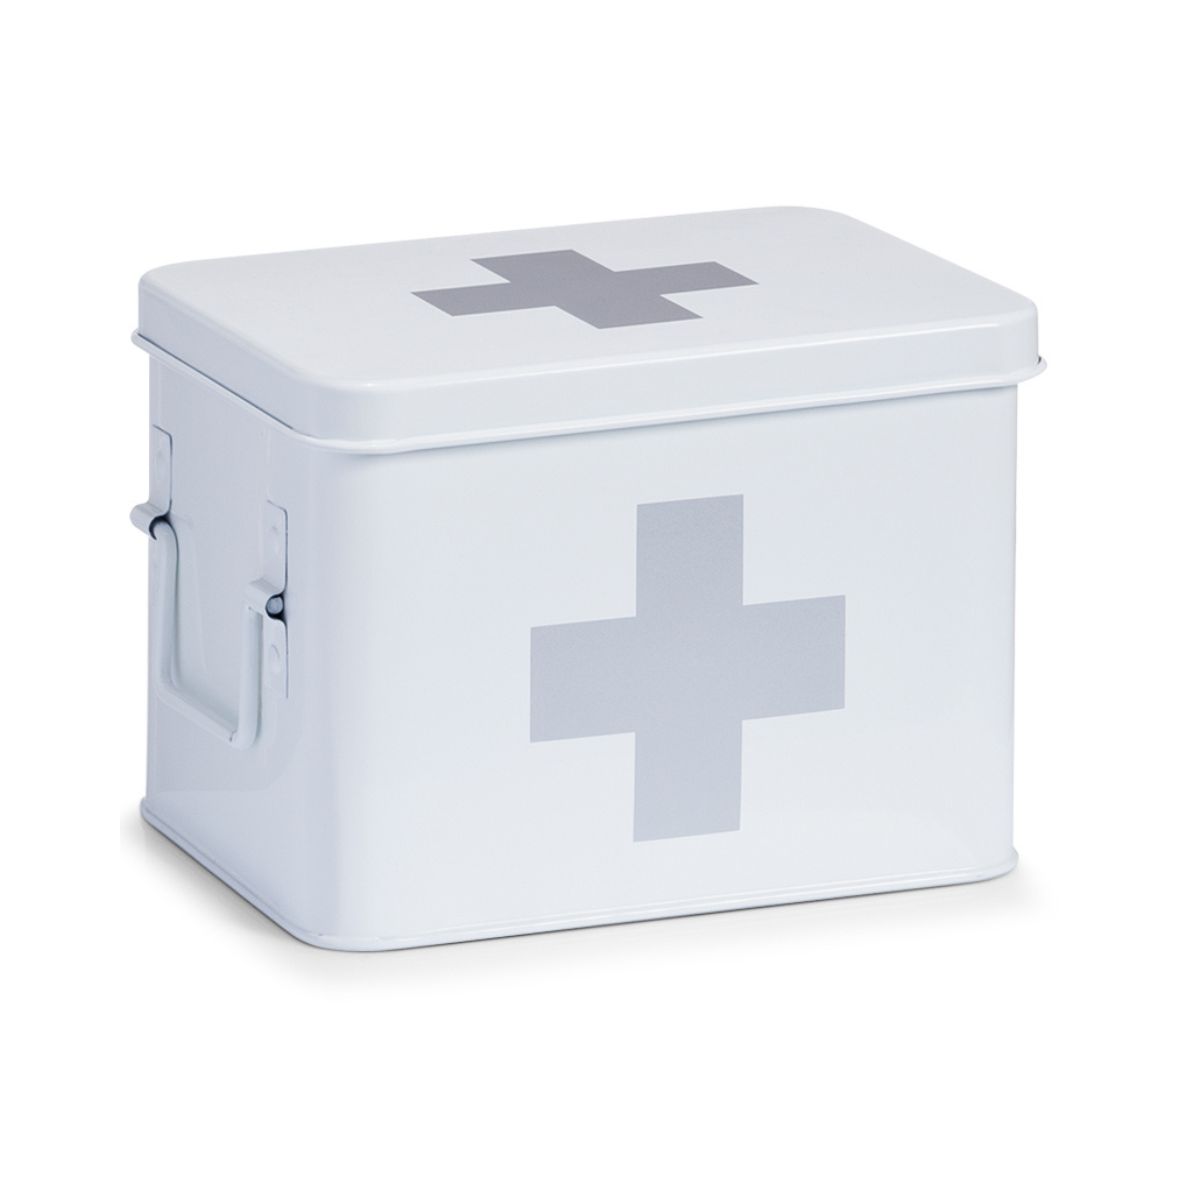 Mobilier interior - Cutie alba din metal pentru medicamente, 21,5 x 16 x 16 cm, Medicine Box Maxi Zeller, hectarul.ro